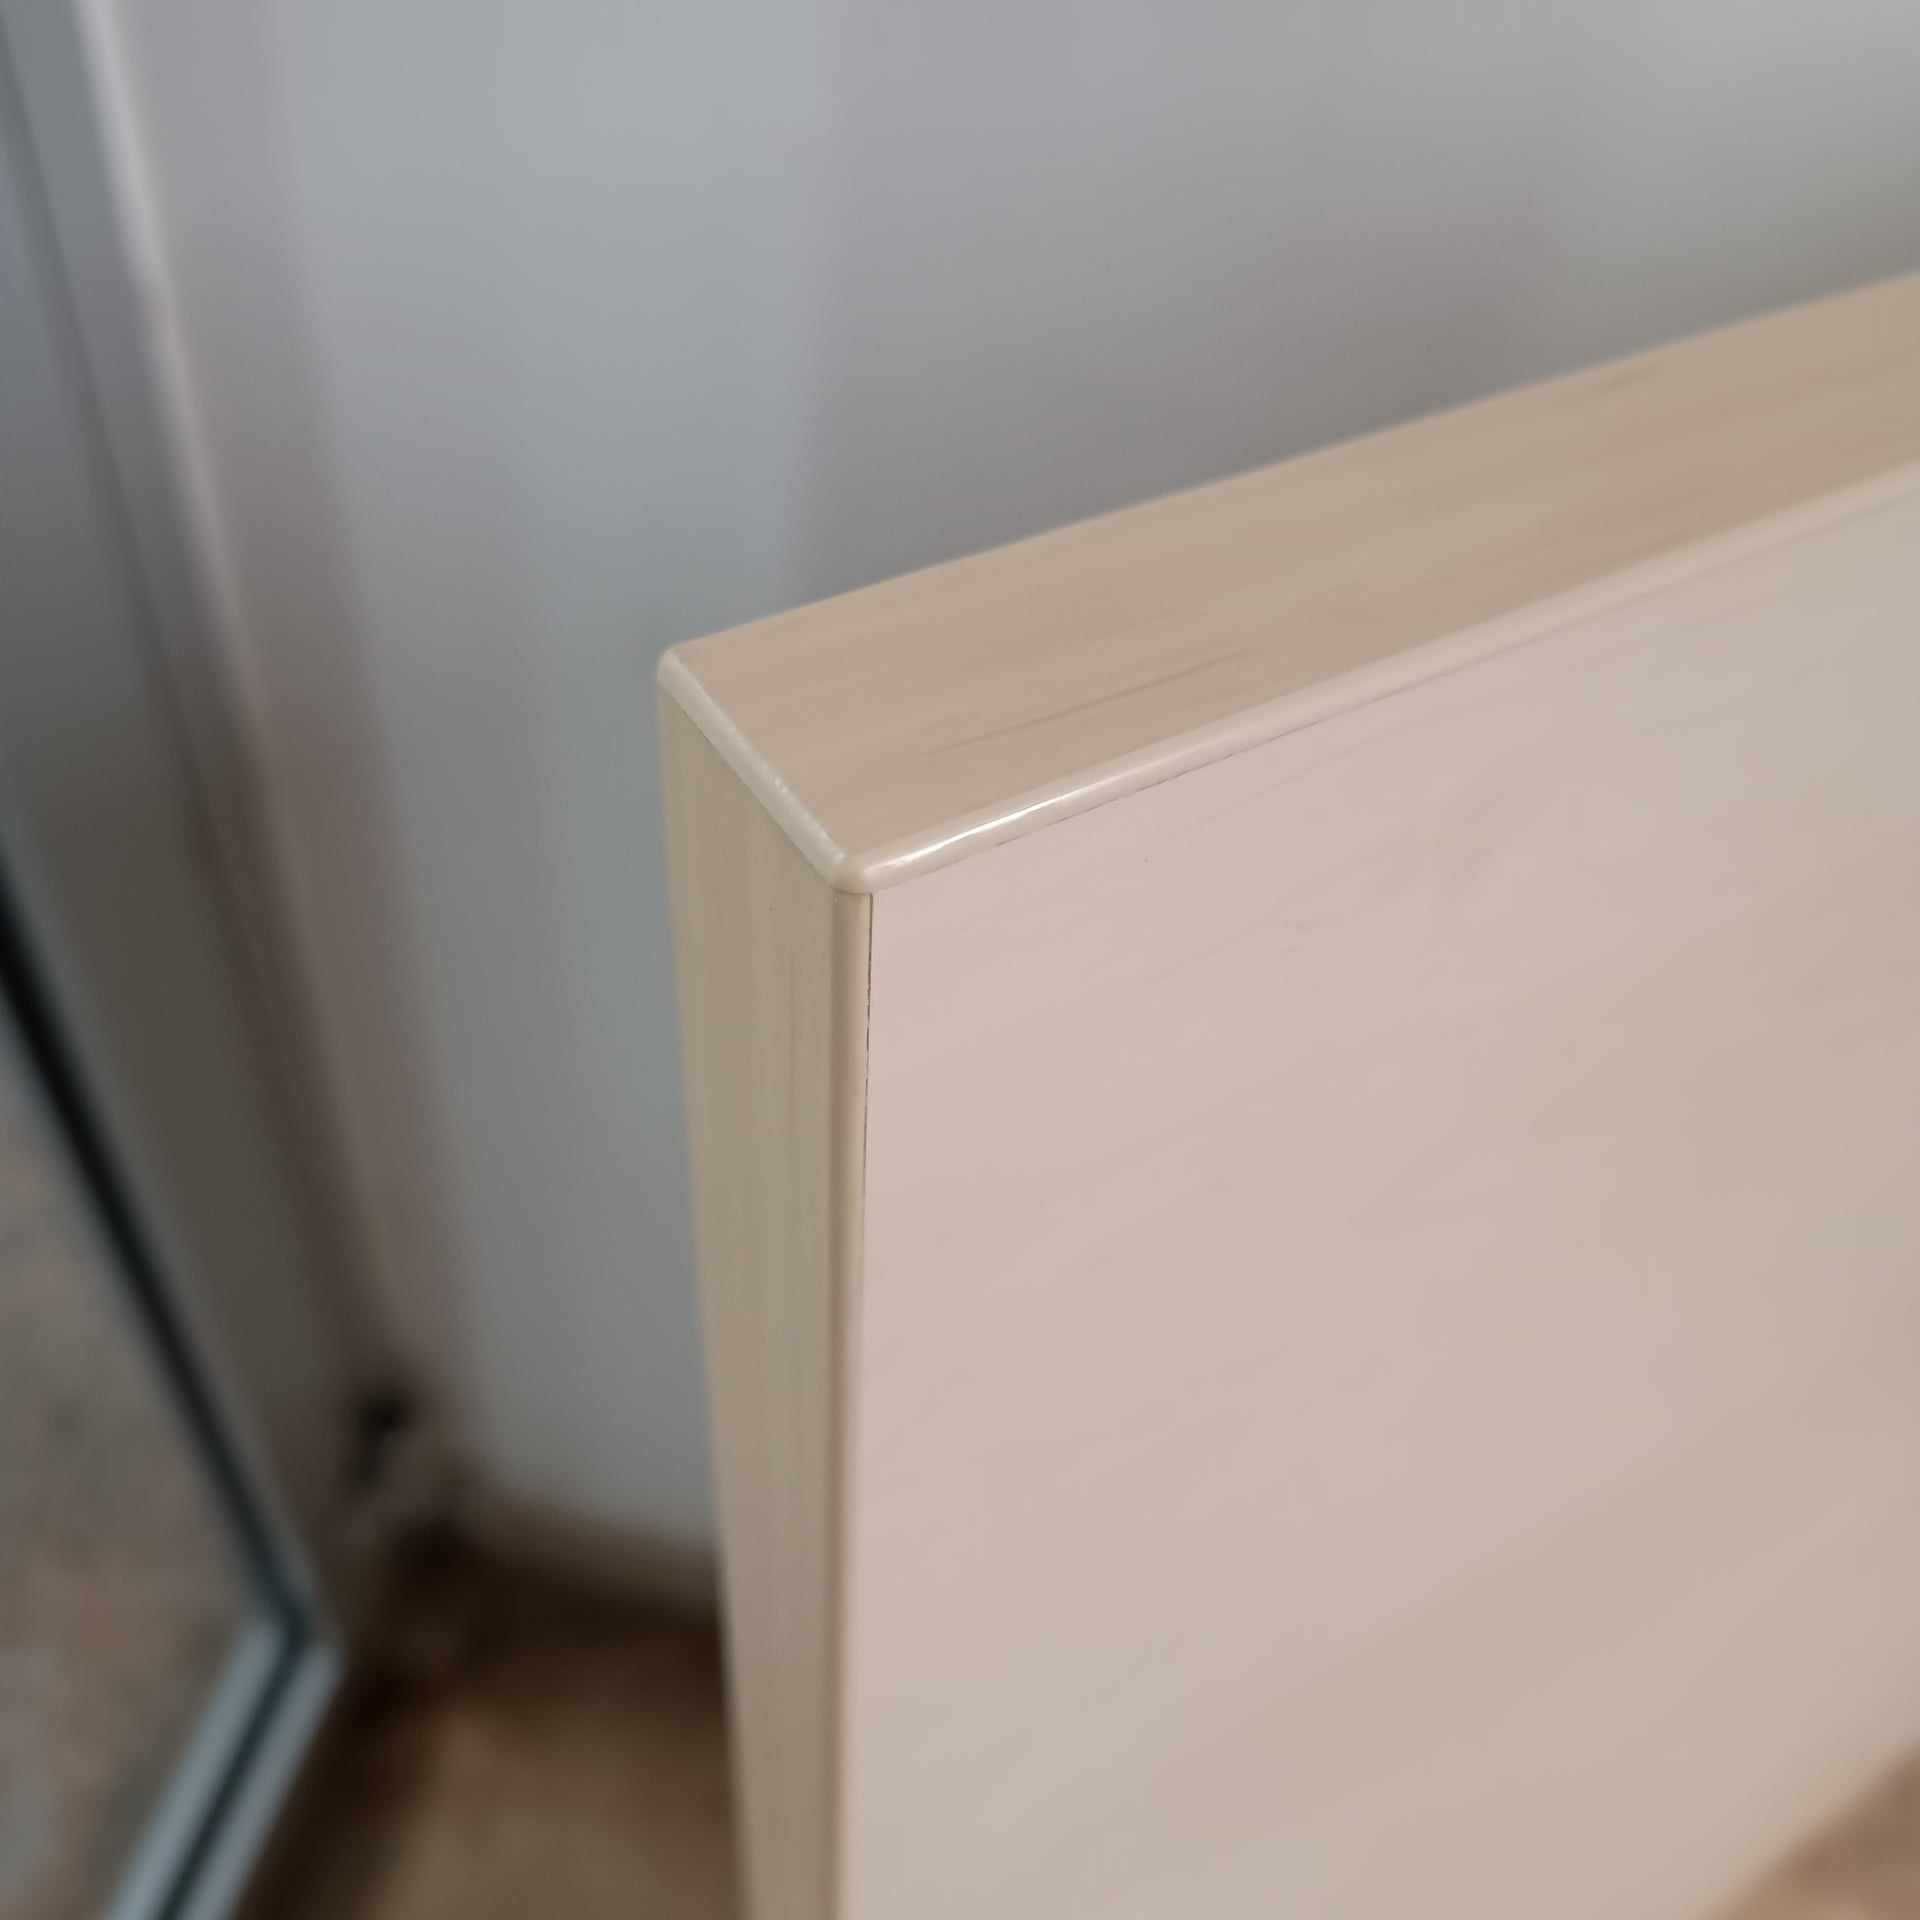 blat biurka biurko narożne płyta meblowa